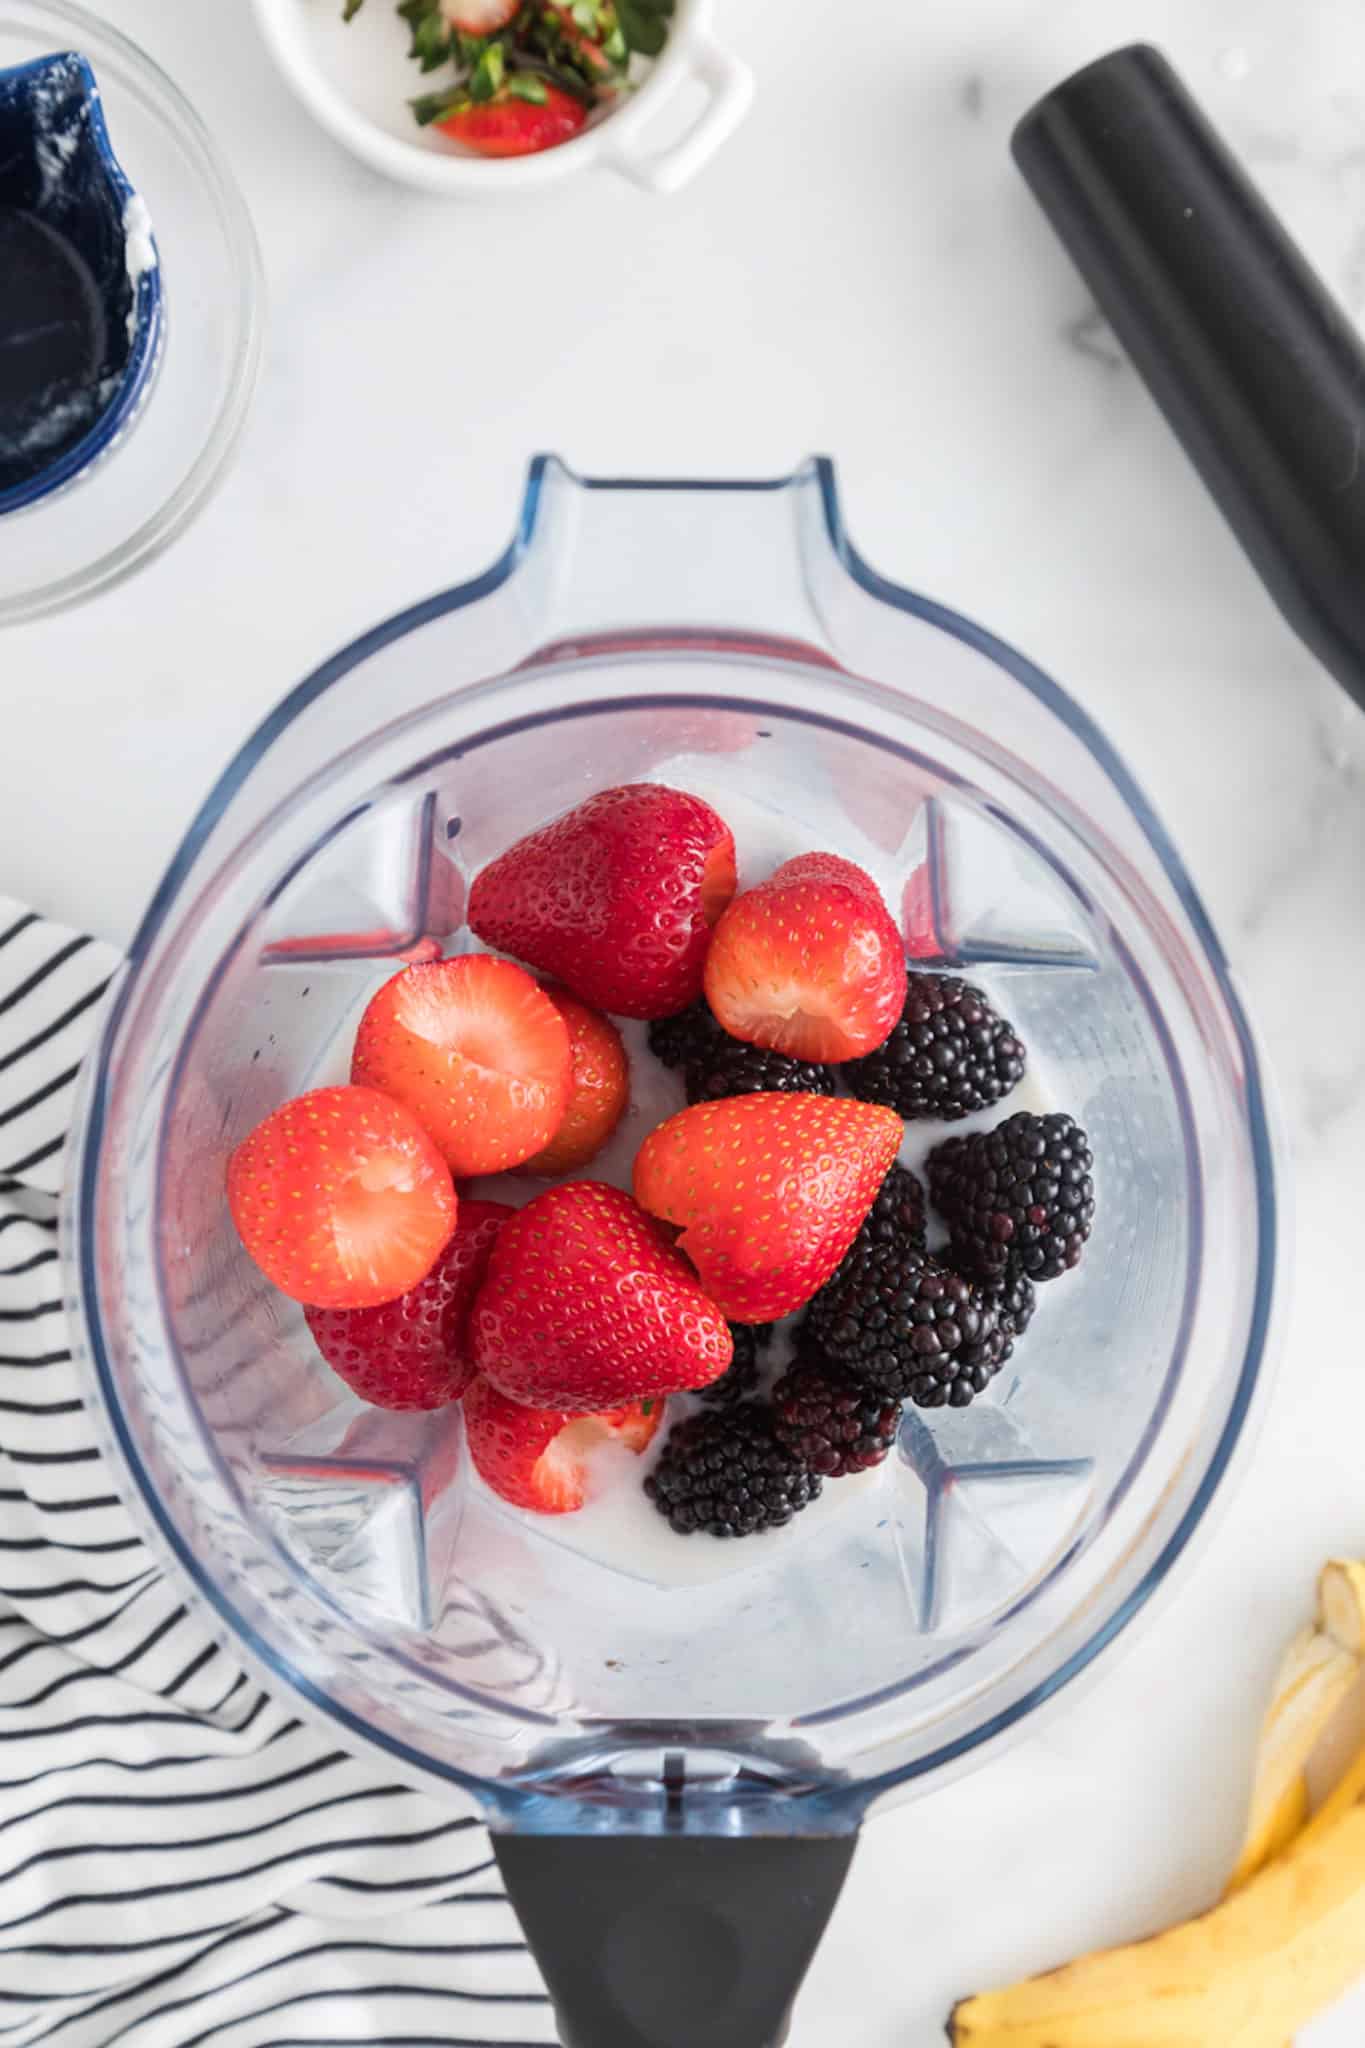 Fresh strawberries, blackberries, and milk in the jar of a blender.